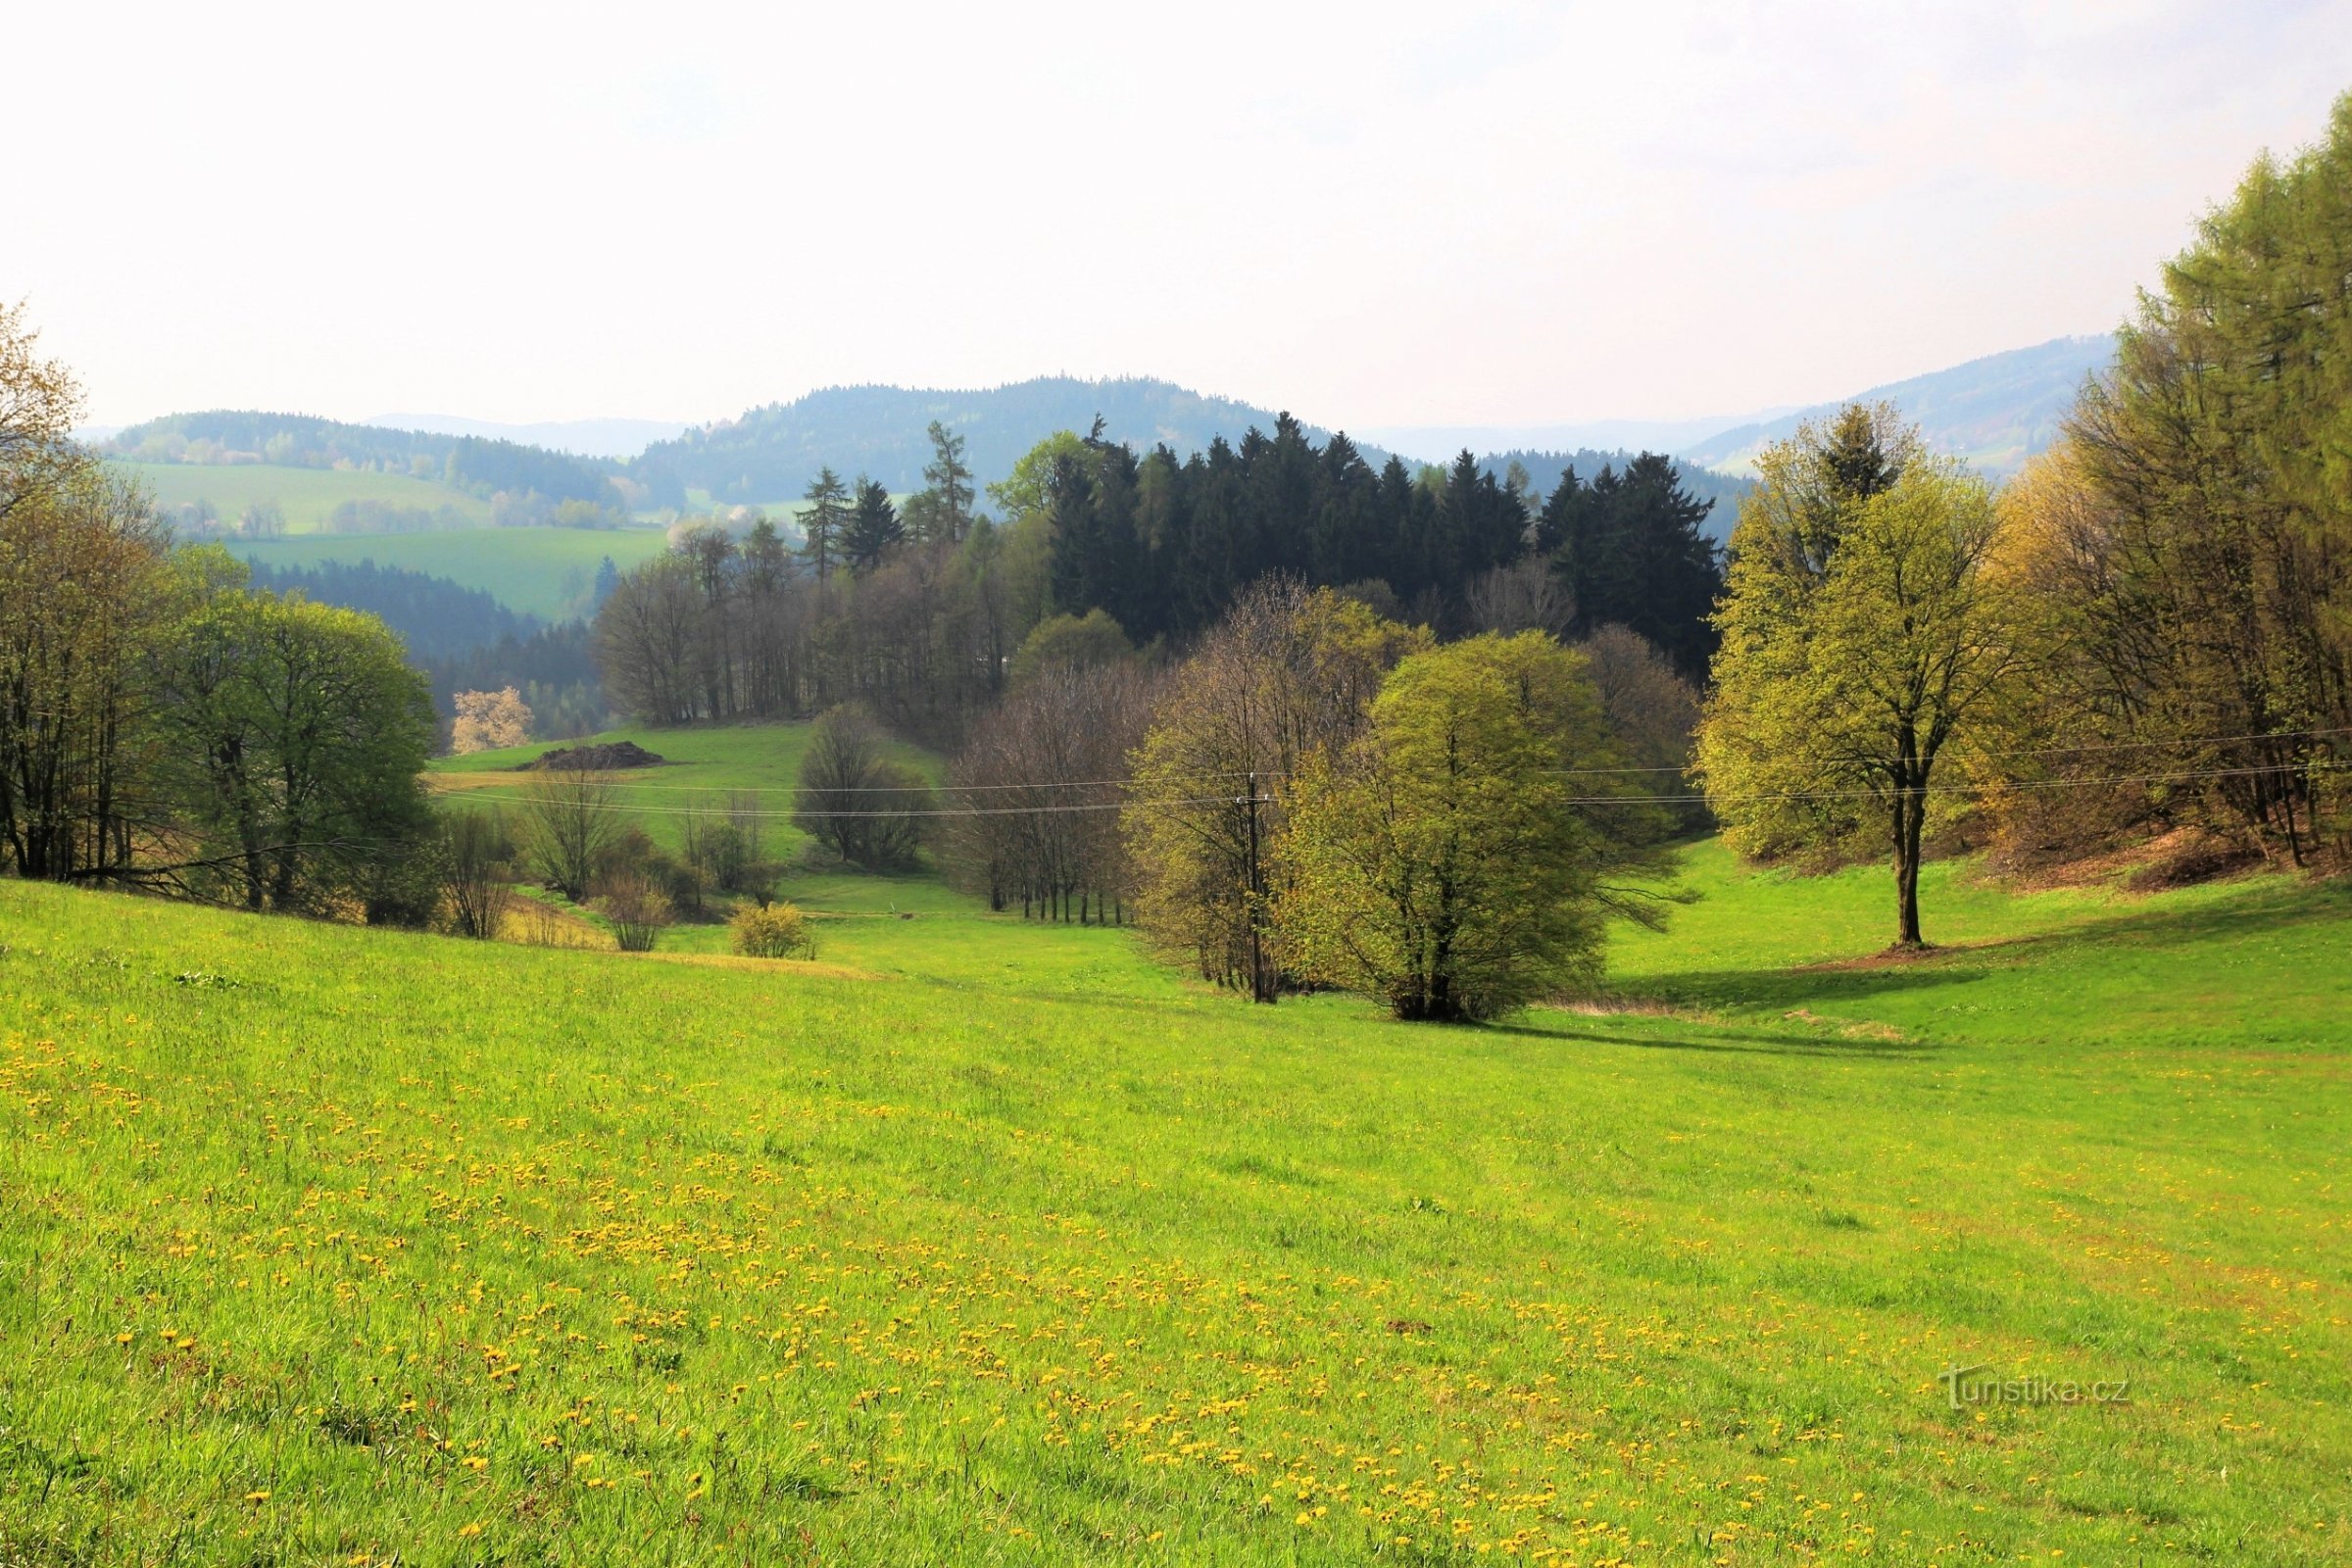 Stoleťákin läheisyydessä on laajoja niittyjä, piirteitä ja pieniä metsiä